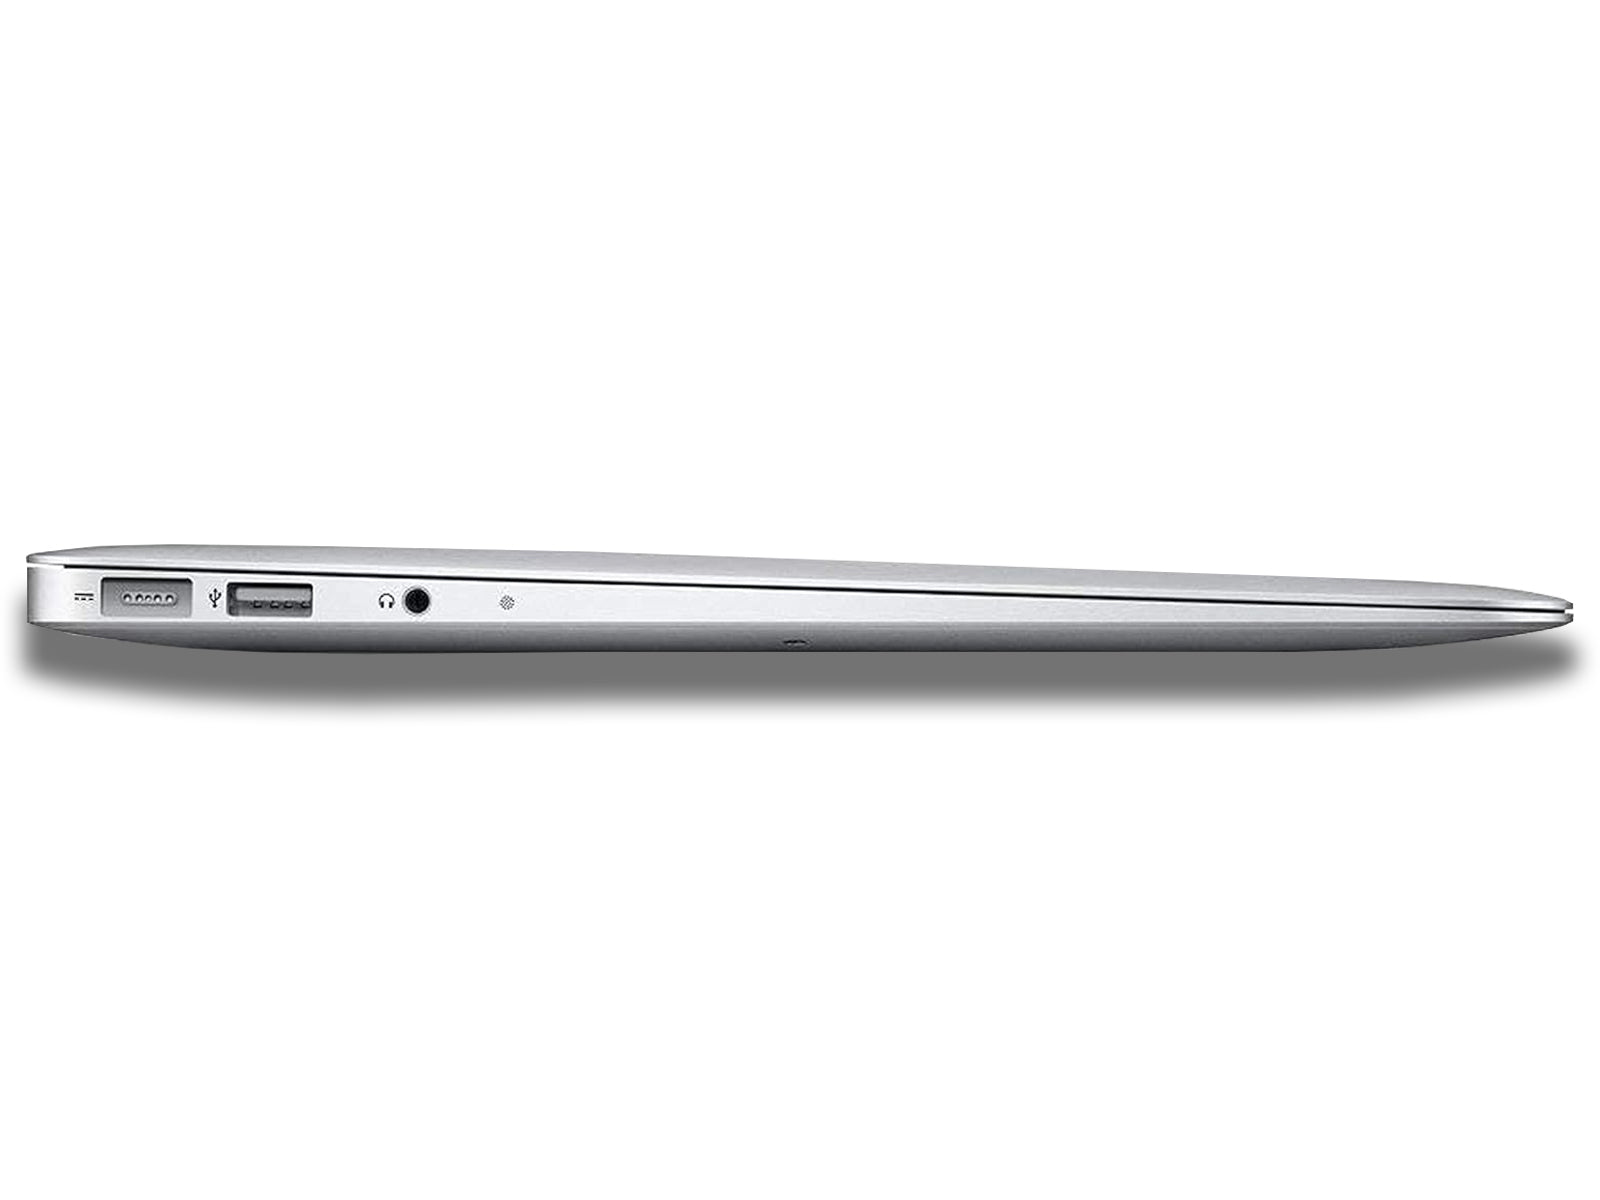 Apple MacBook Air side view